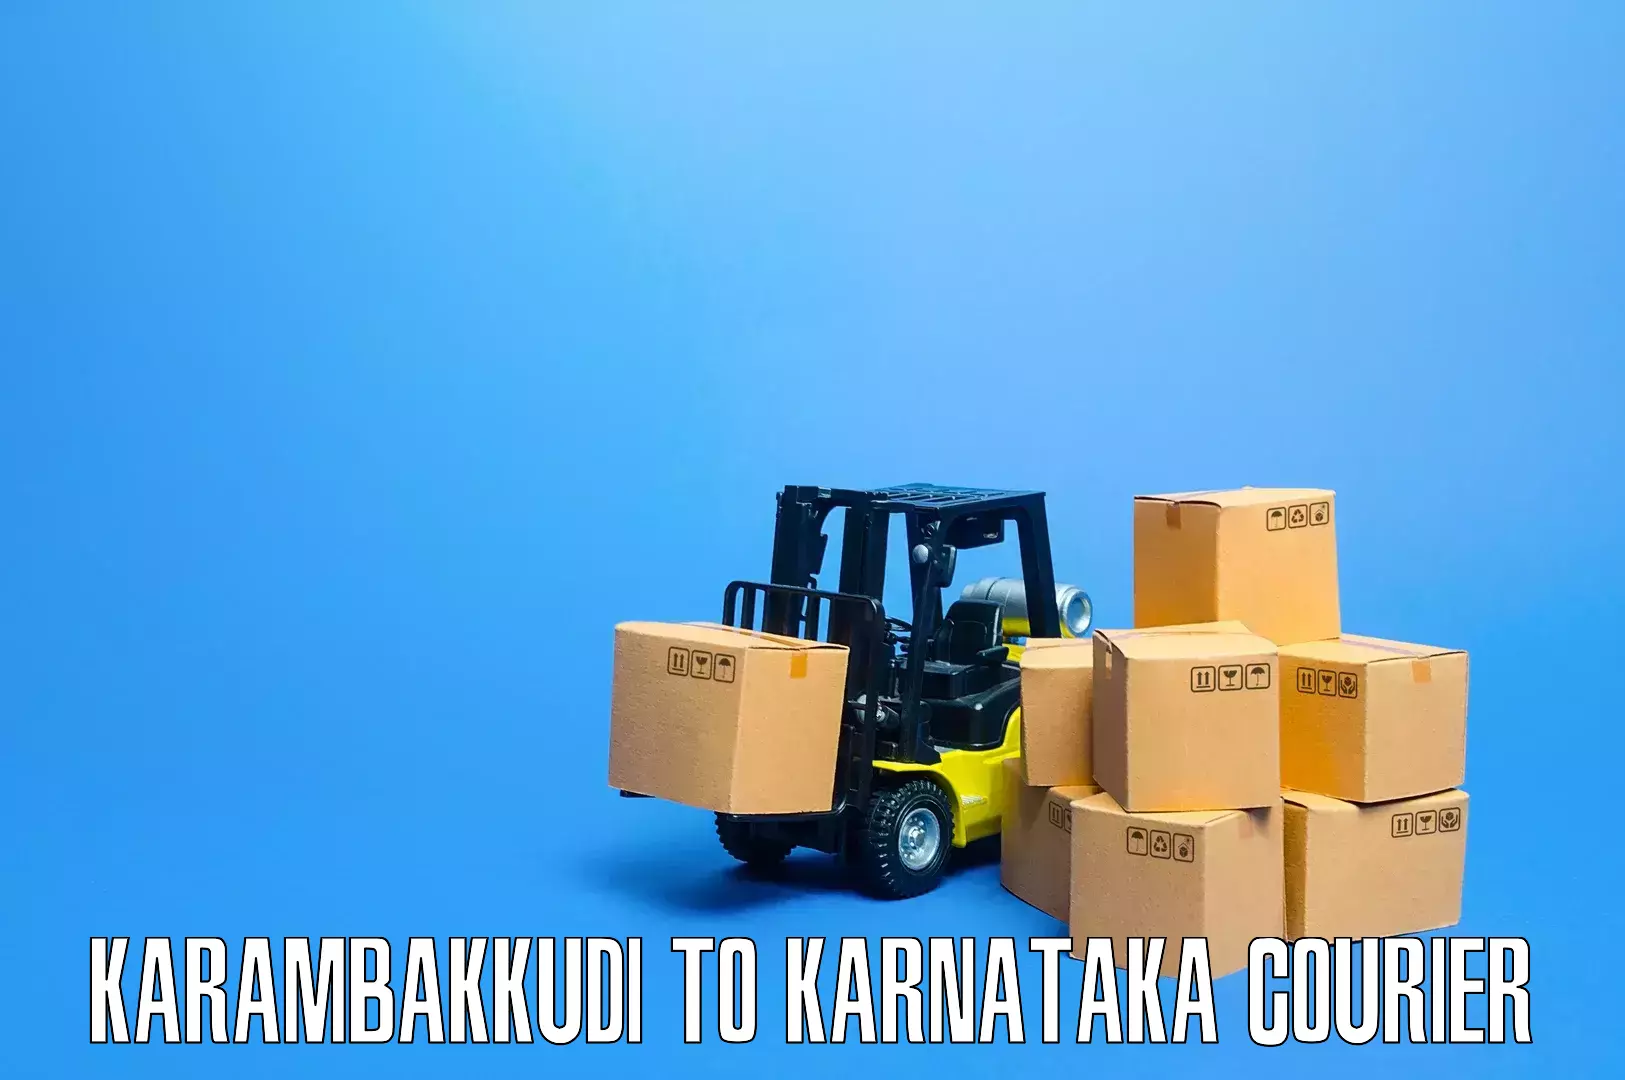 Quality furniture transport Karambakkudi to Karnataka